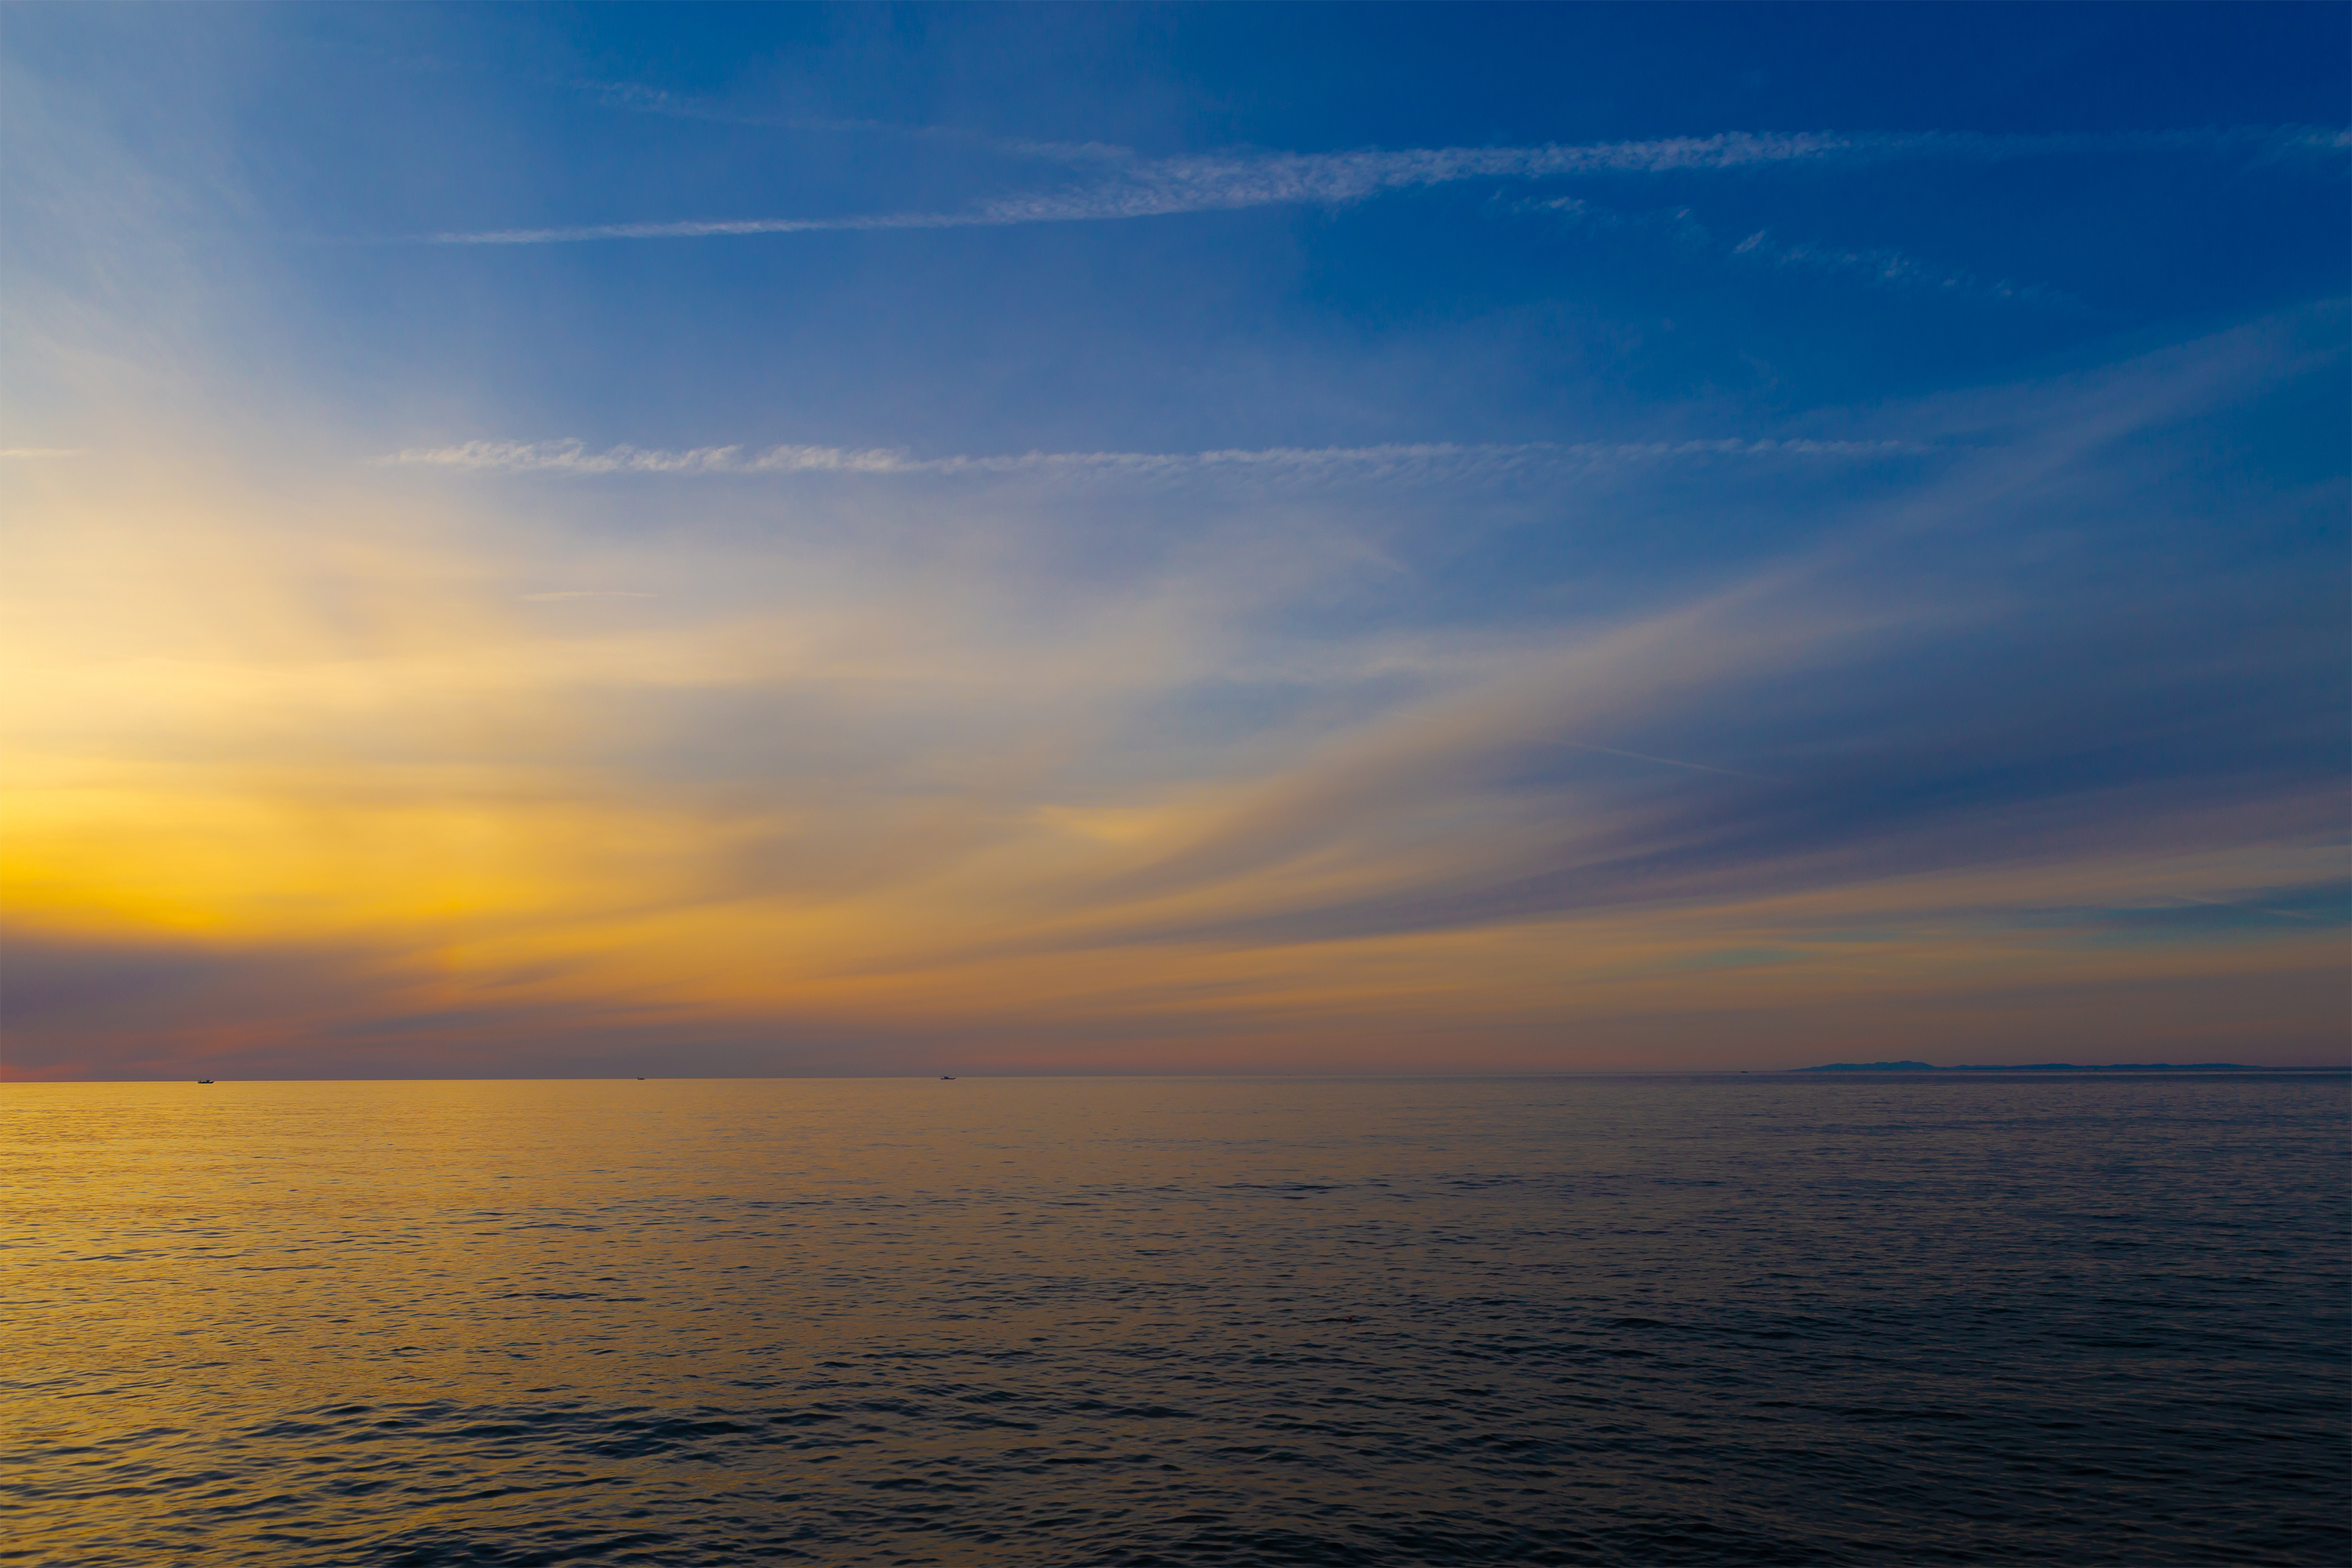 日本海と夕焼けと青空 無料の高画質フリー写真素材 イメージズラボ